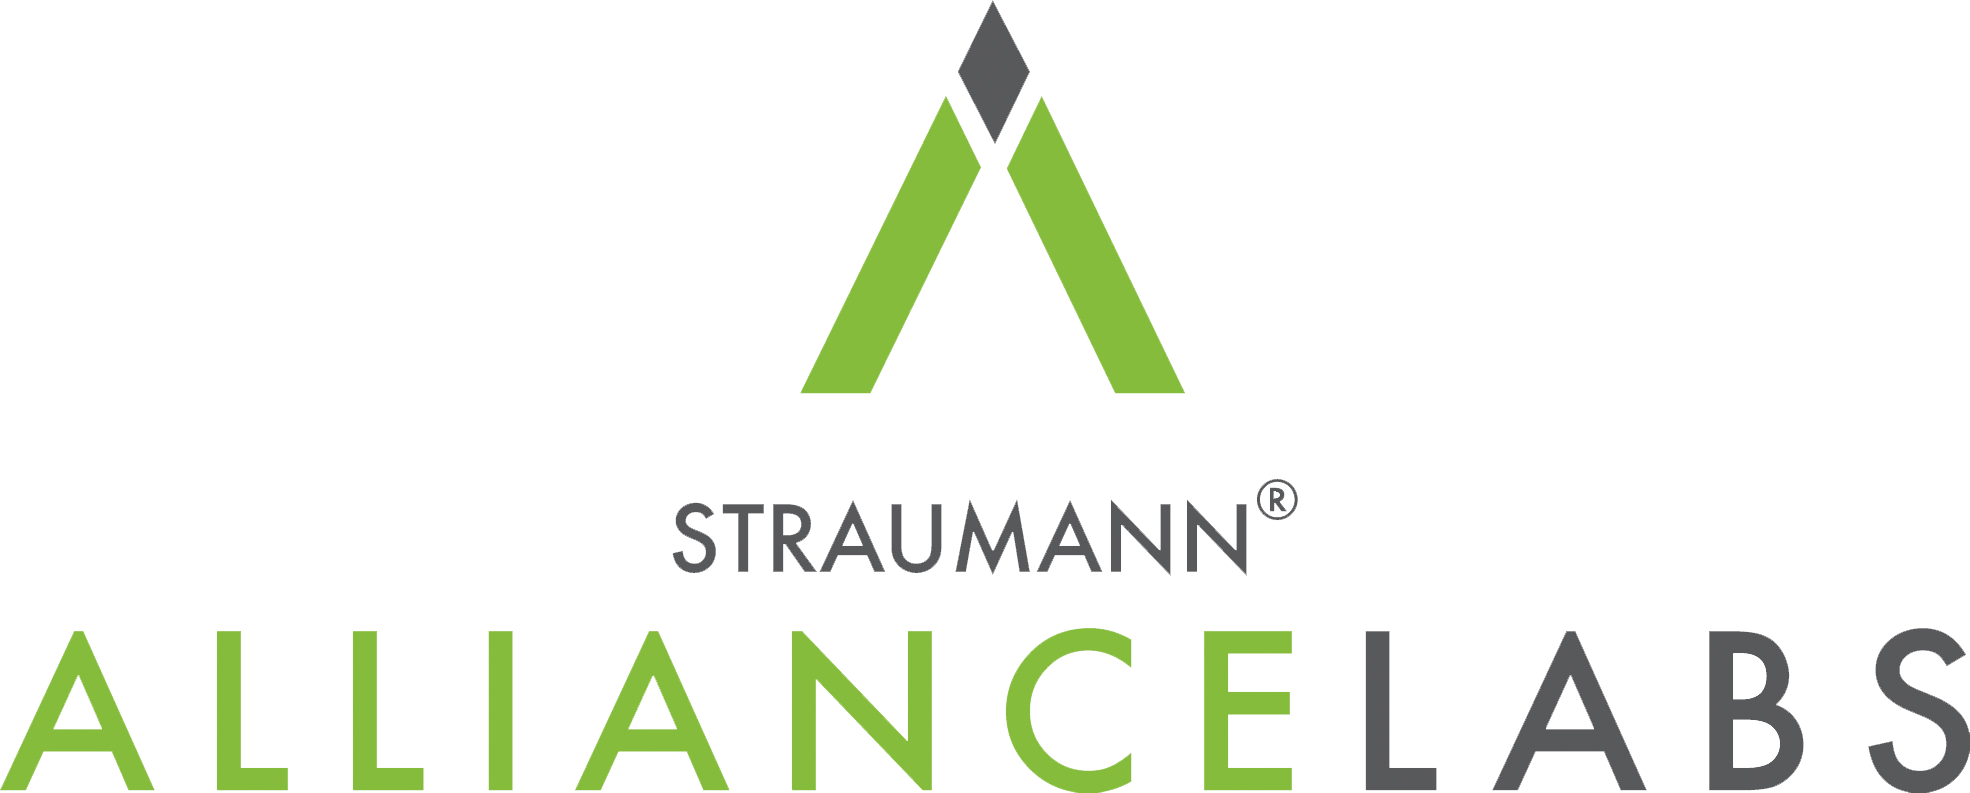 Straumann Alliance Elite Partner